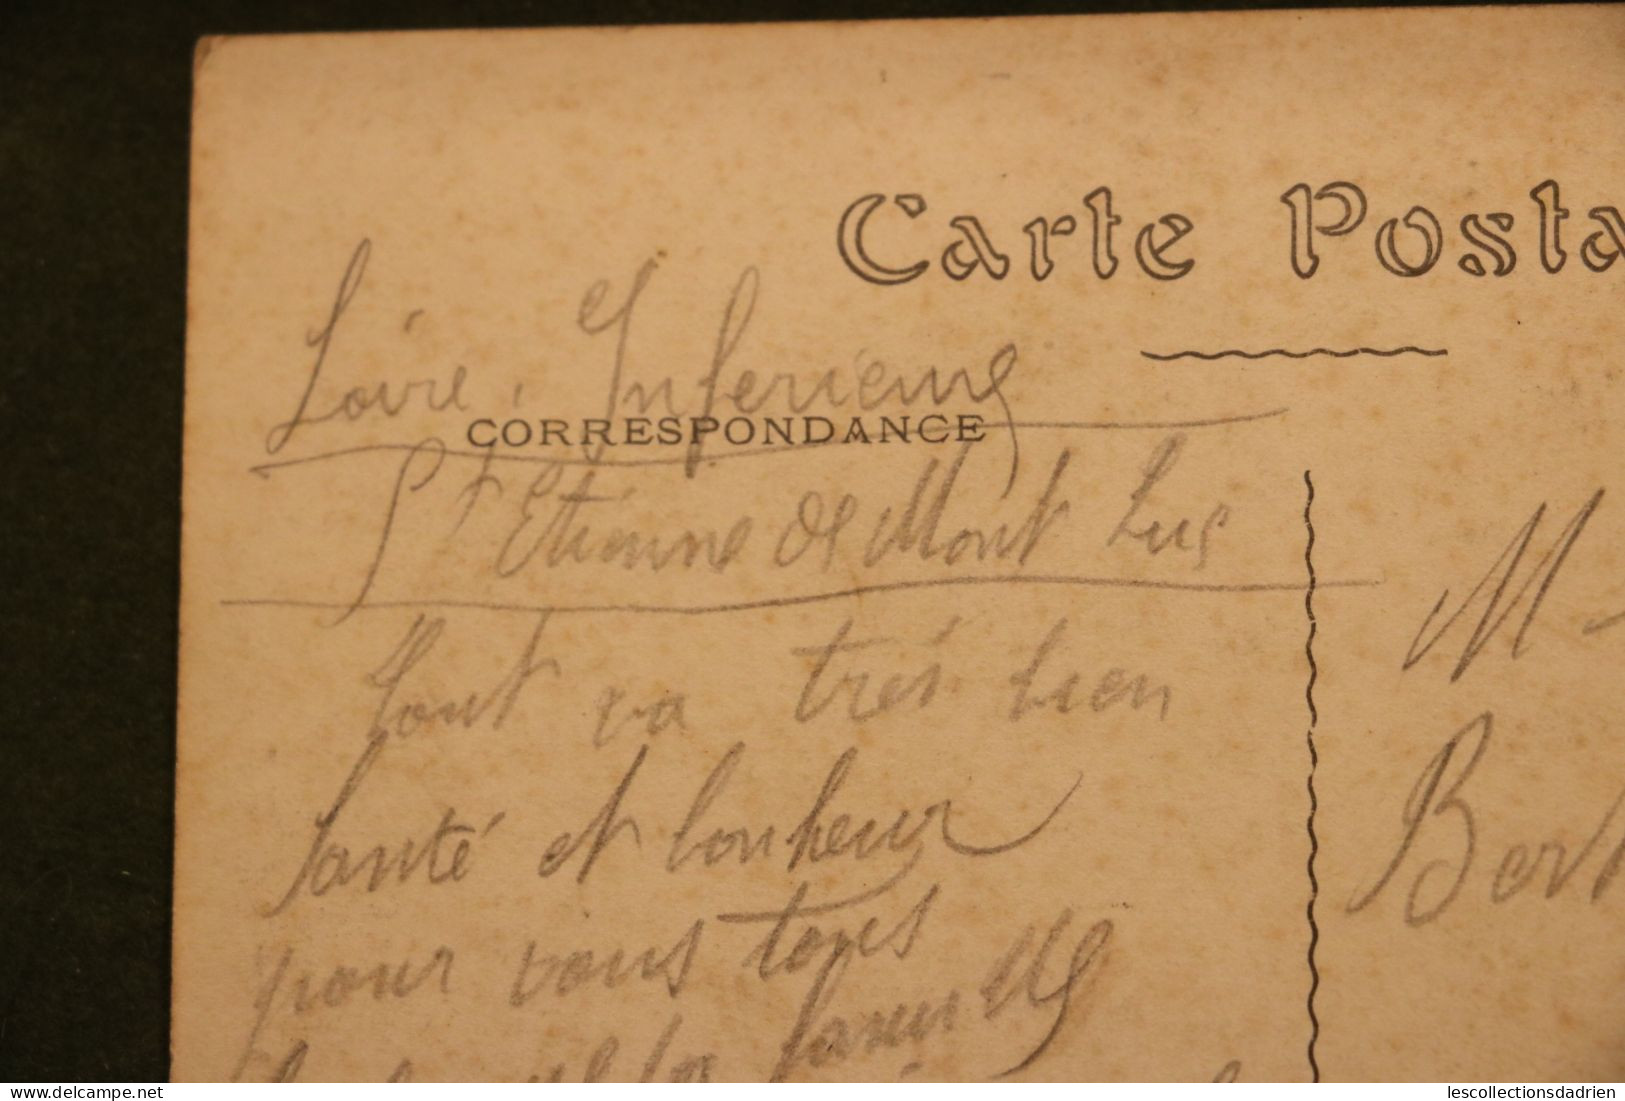 Carte postale Paris les Invalides - noté franchise militaire - daté 1917